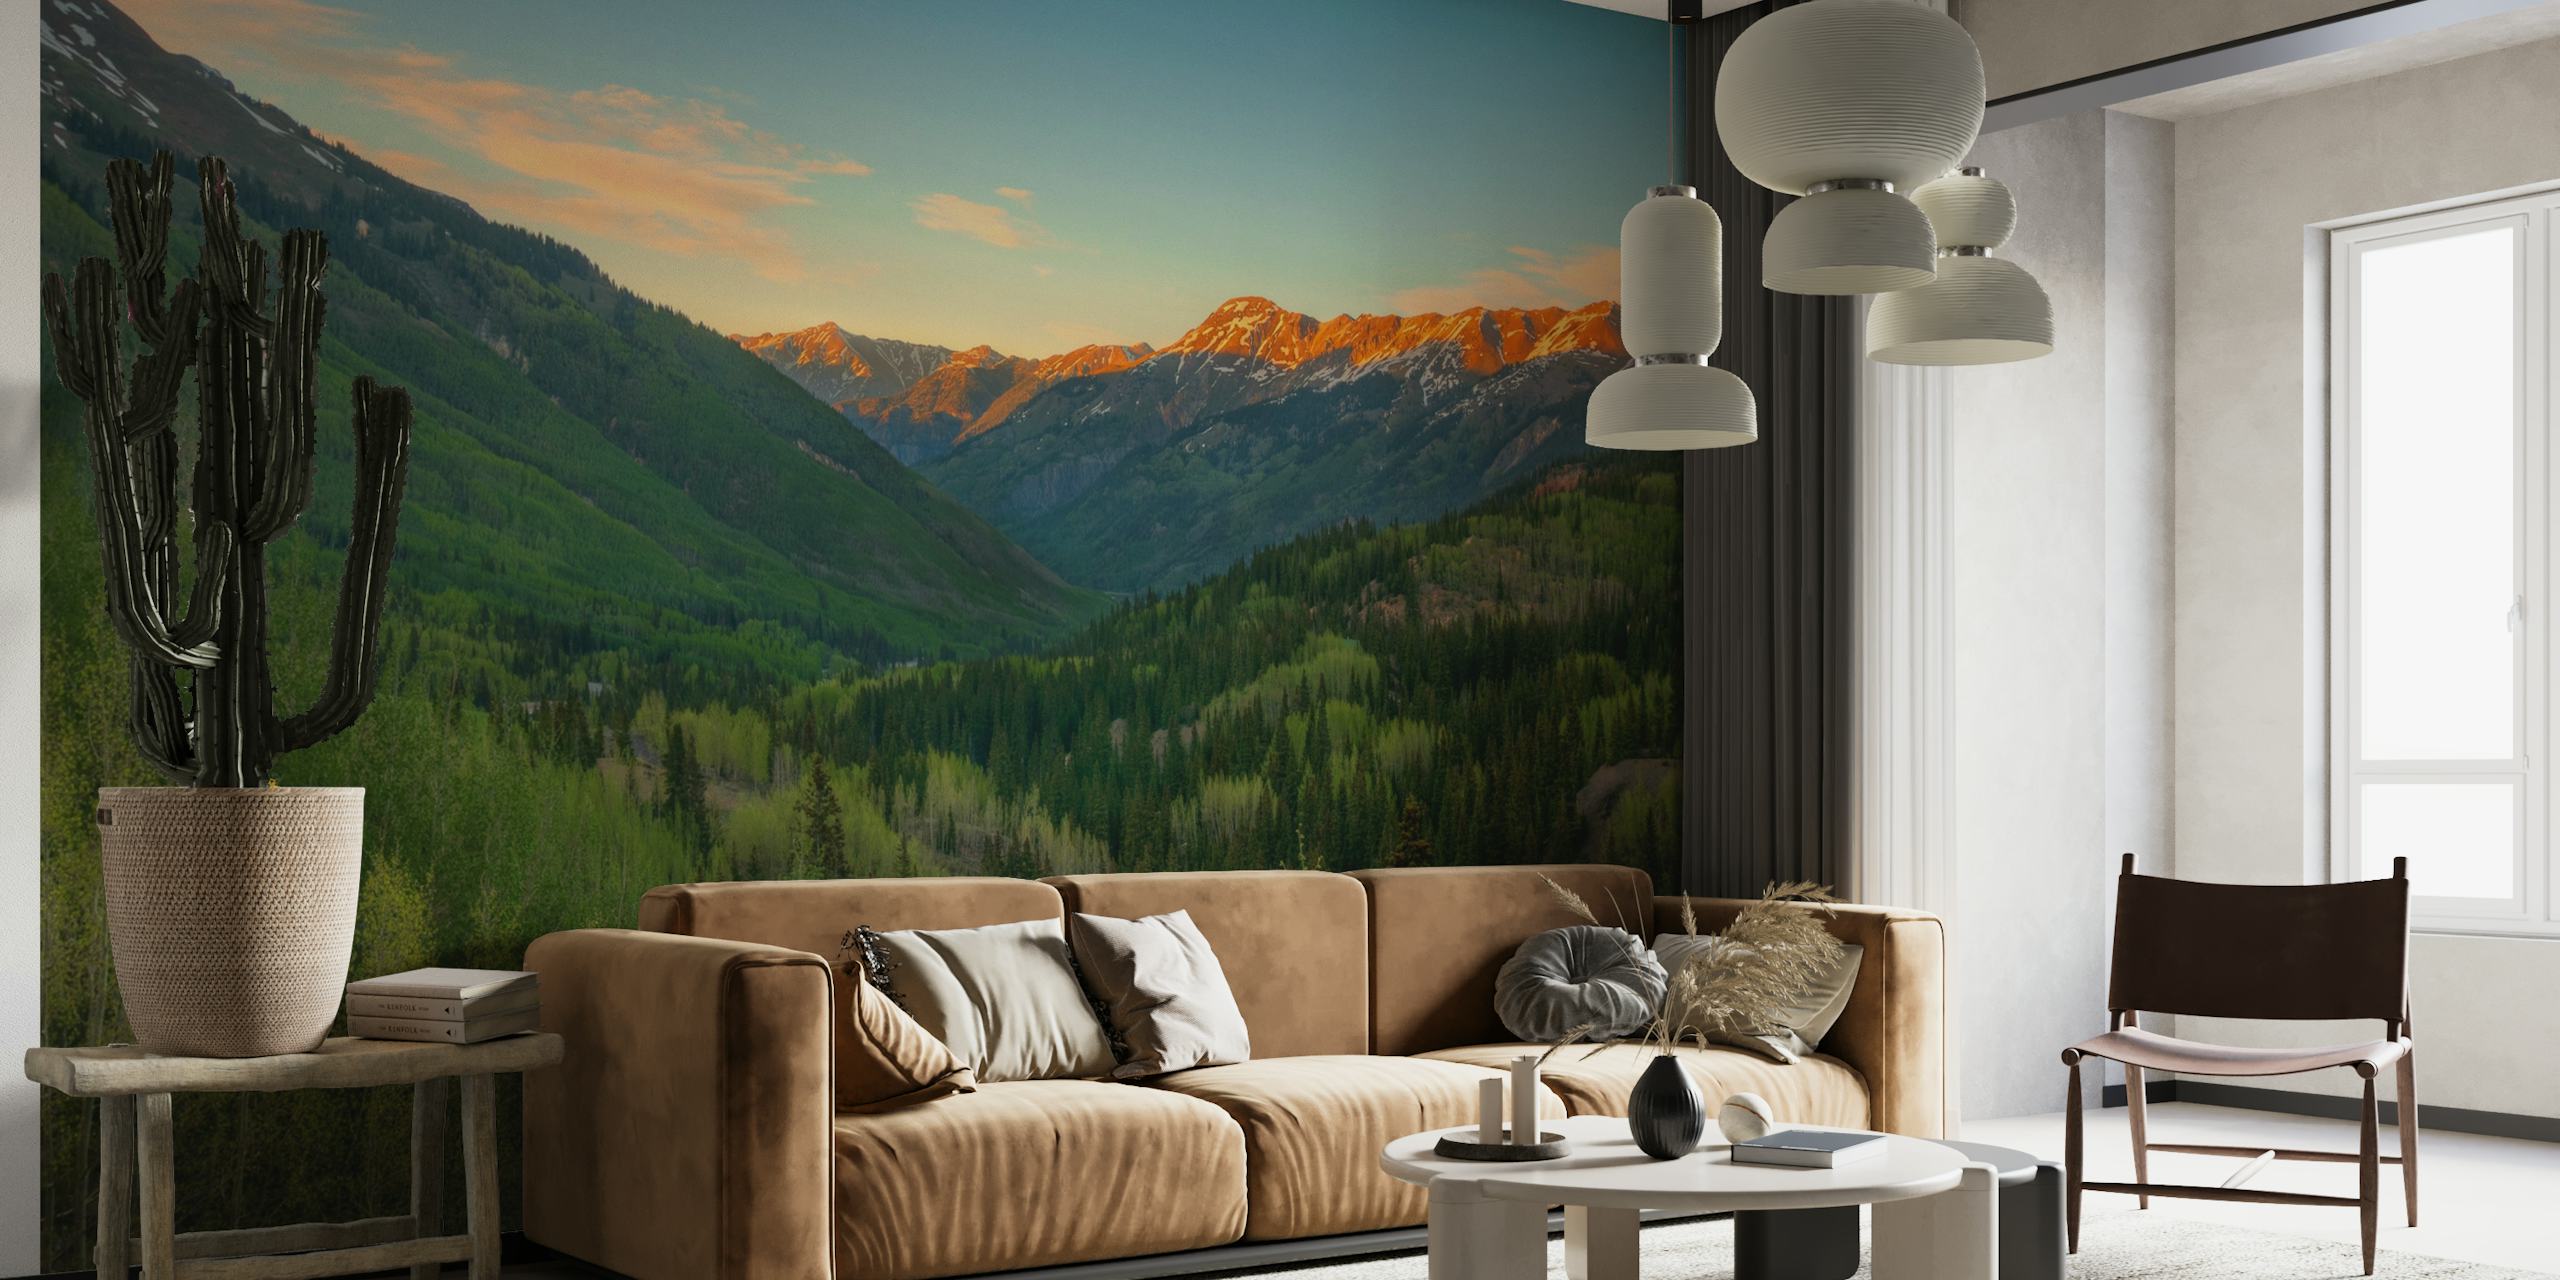 Fototapete mit Panorama-Berglandschaft und Sonnenuntergangsfarben